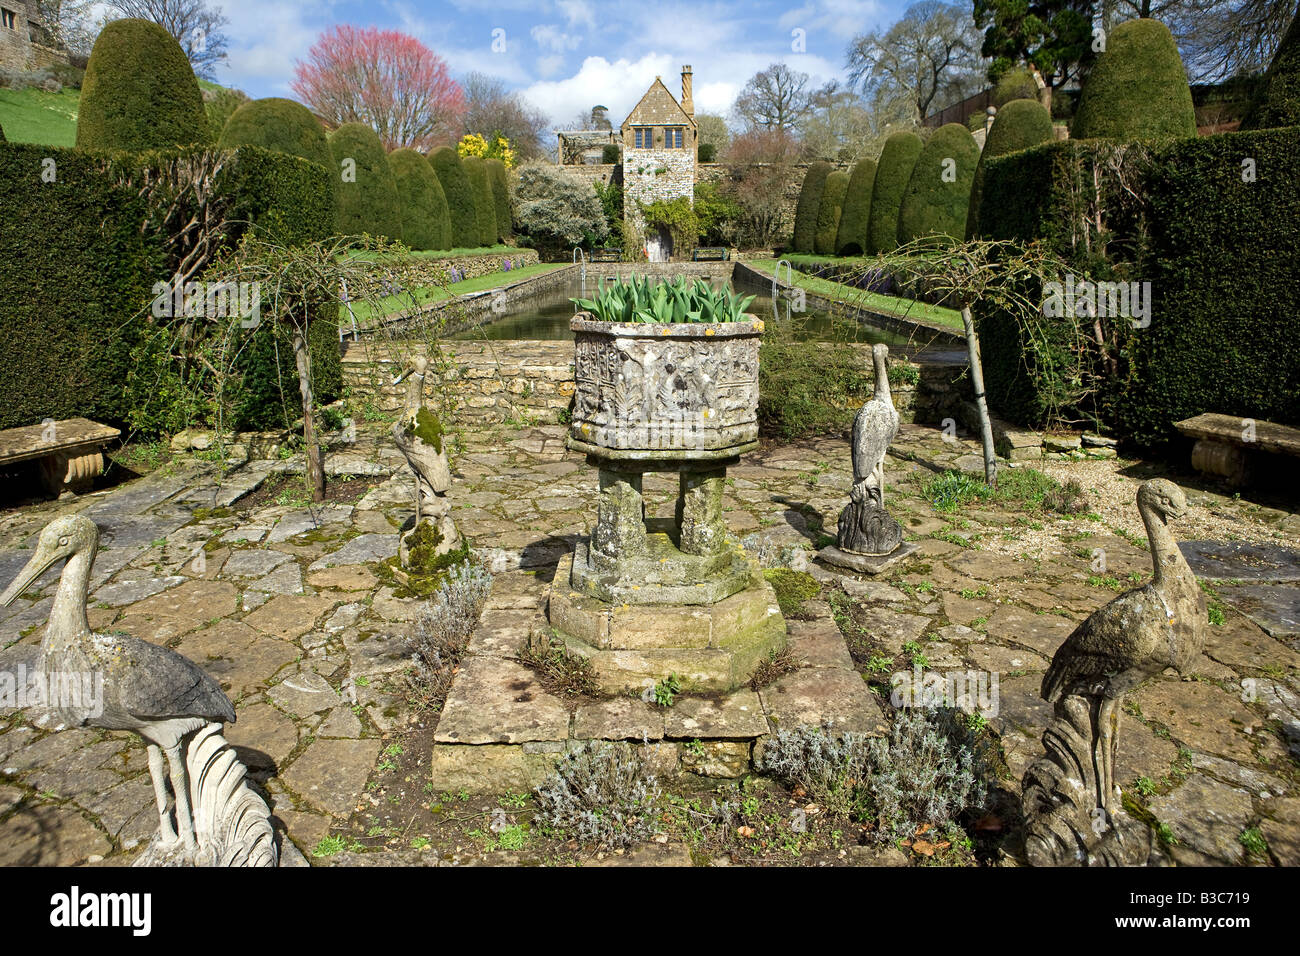 L'Angleterre, dans le Dorset. Mapperton House est une vallée romantique jardin profondément dans une combe Dorset perdue Banque D'Images